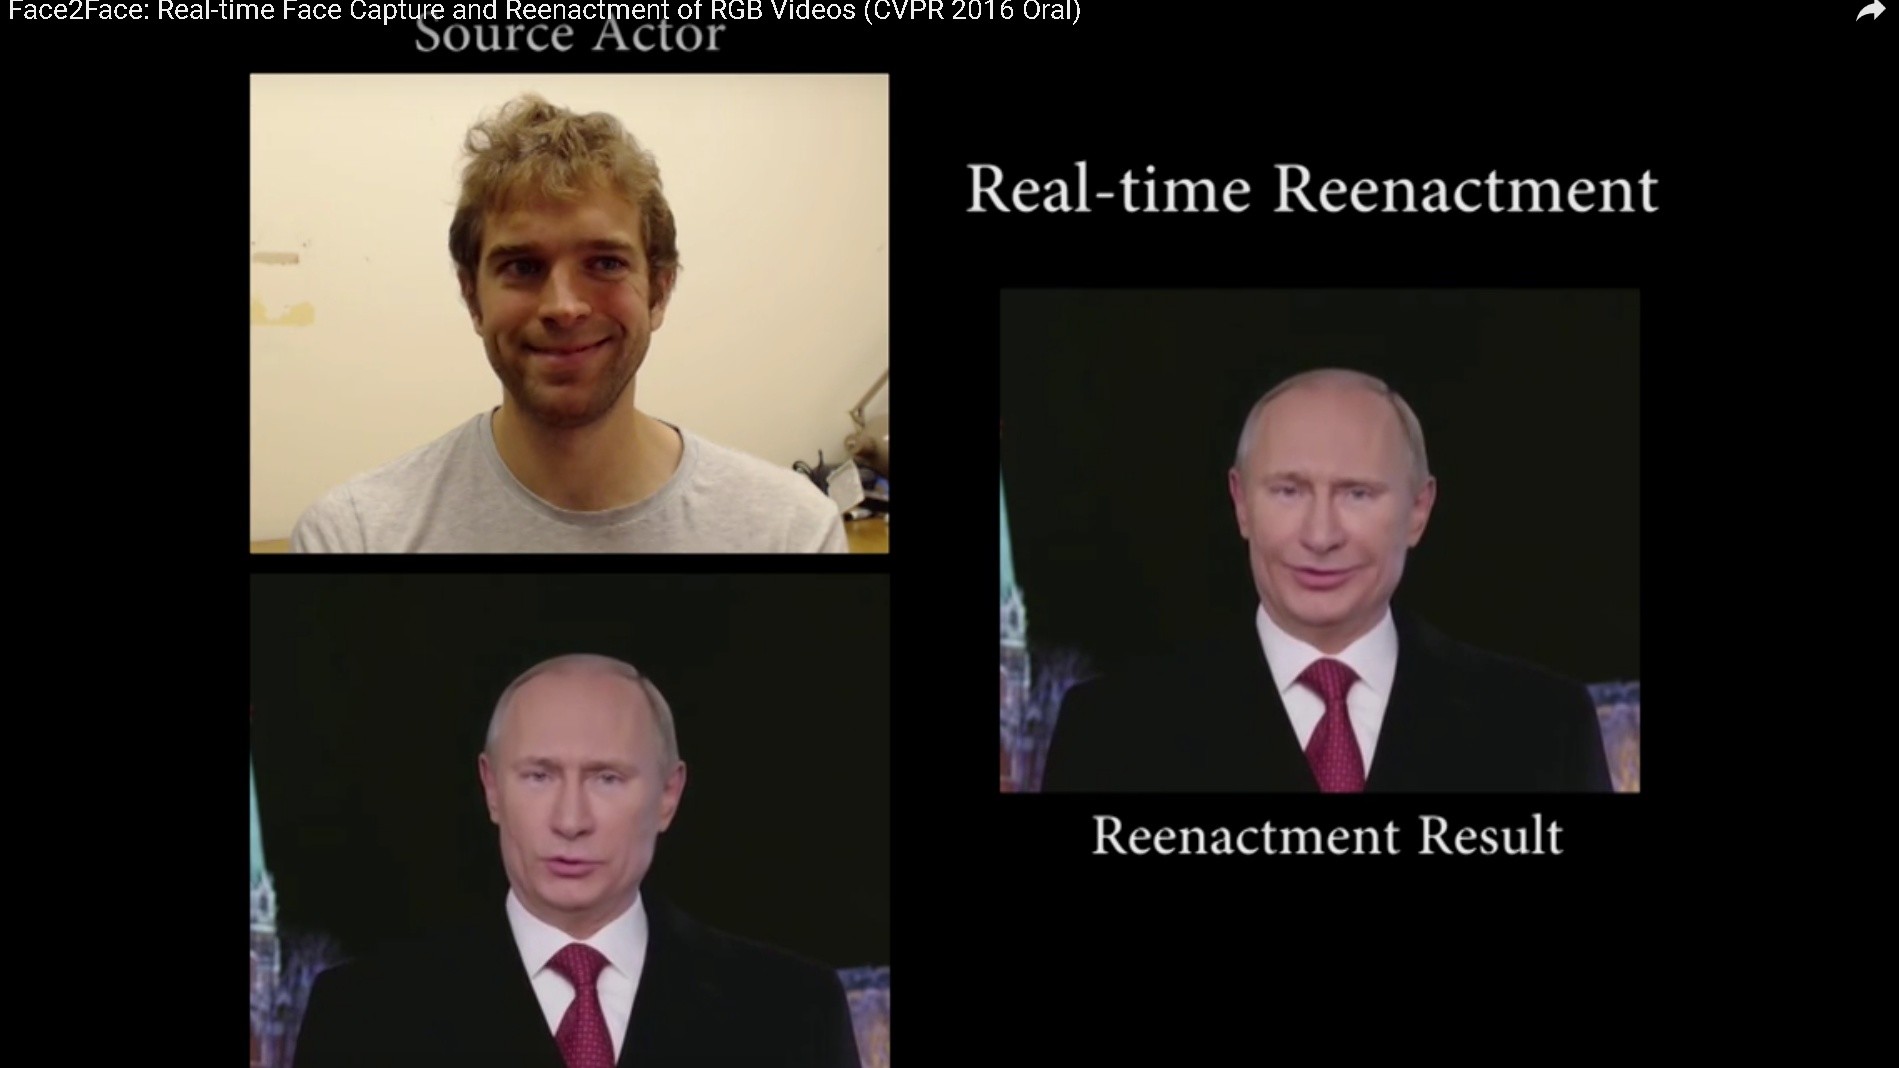 Un nouveau programme permet de modifier en temps réel l’expression faciale d’une personne sur vidéo